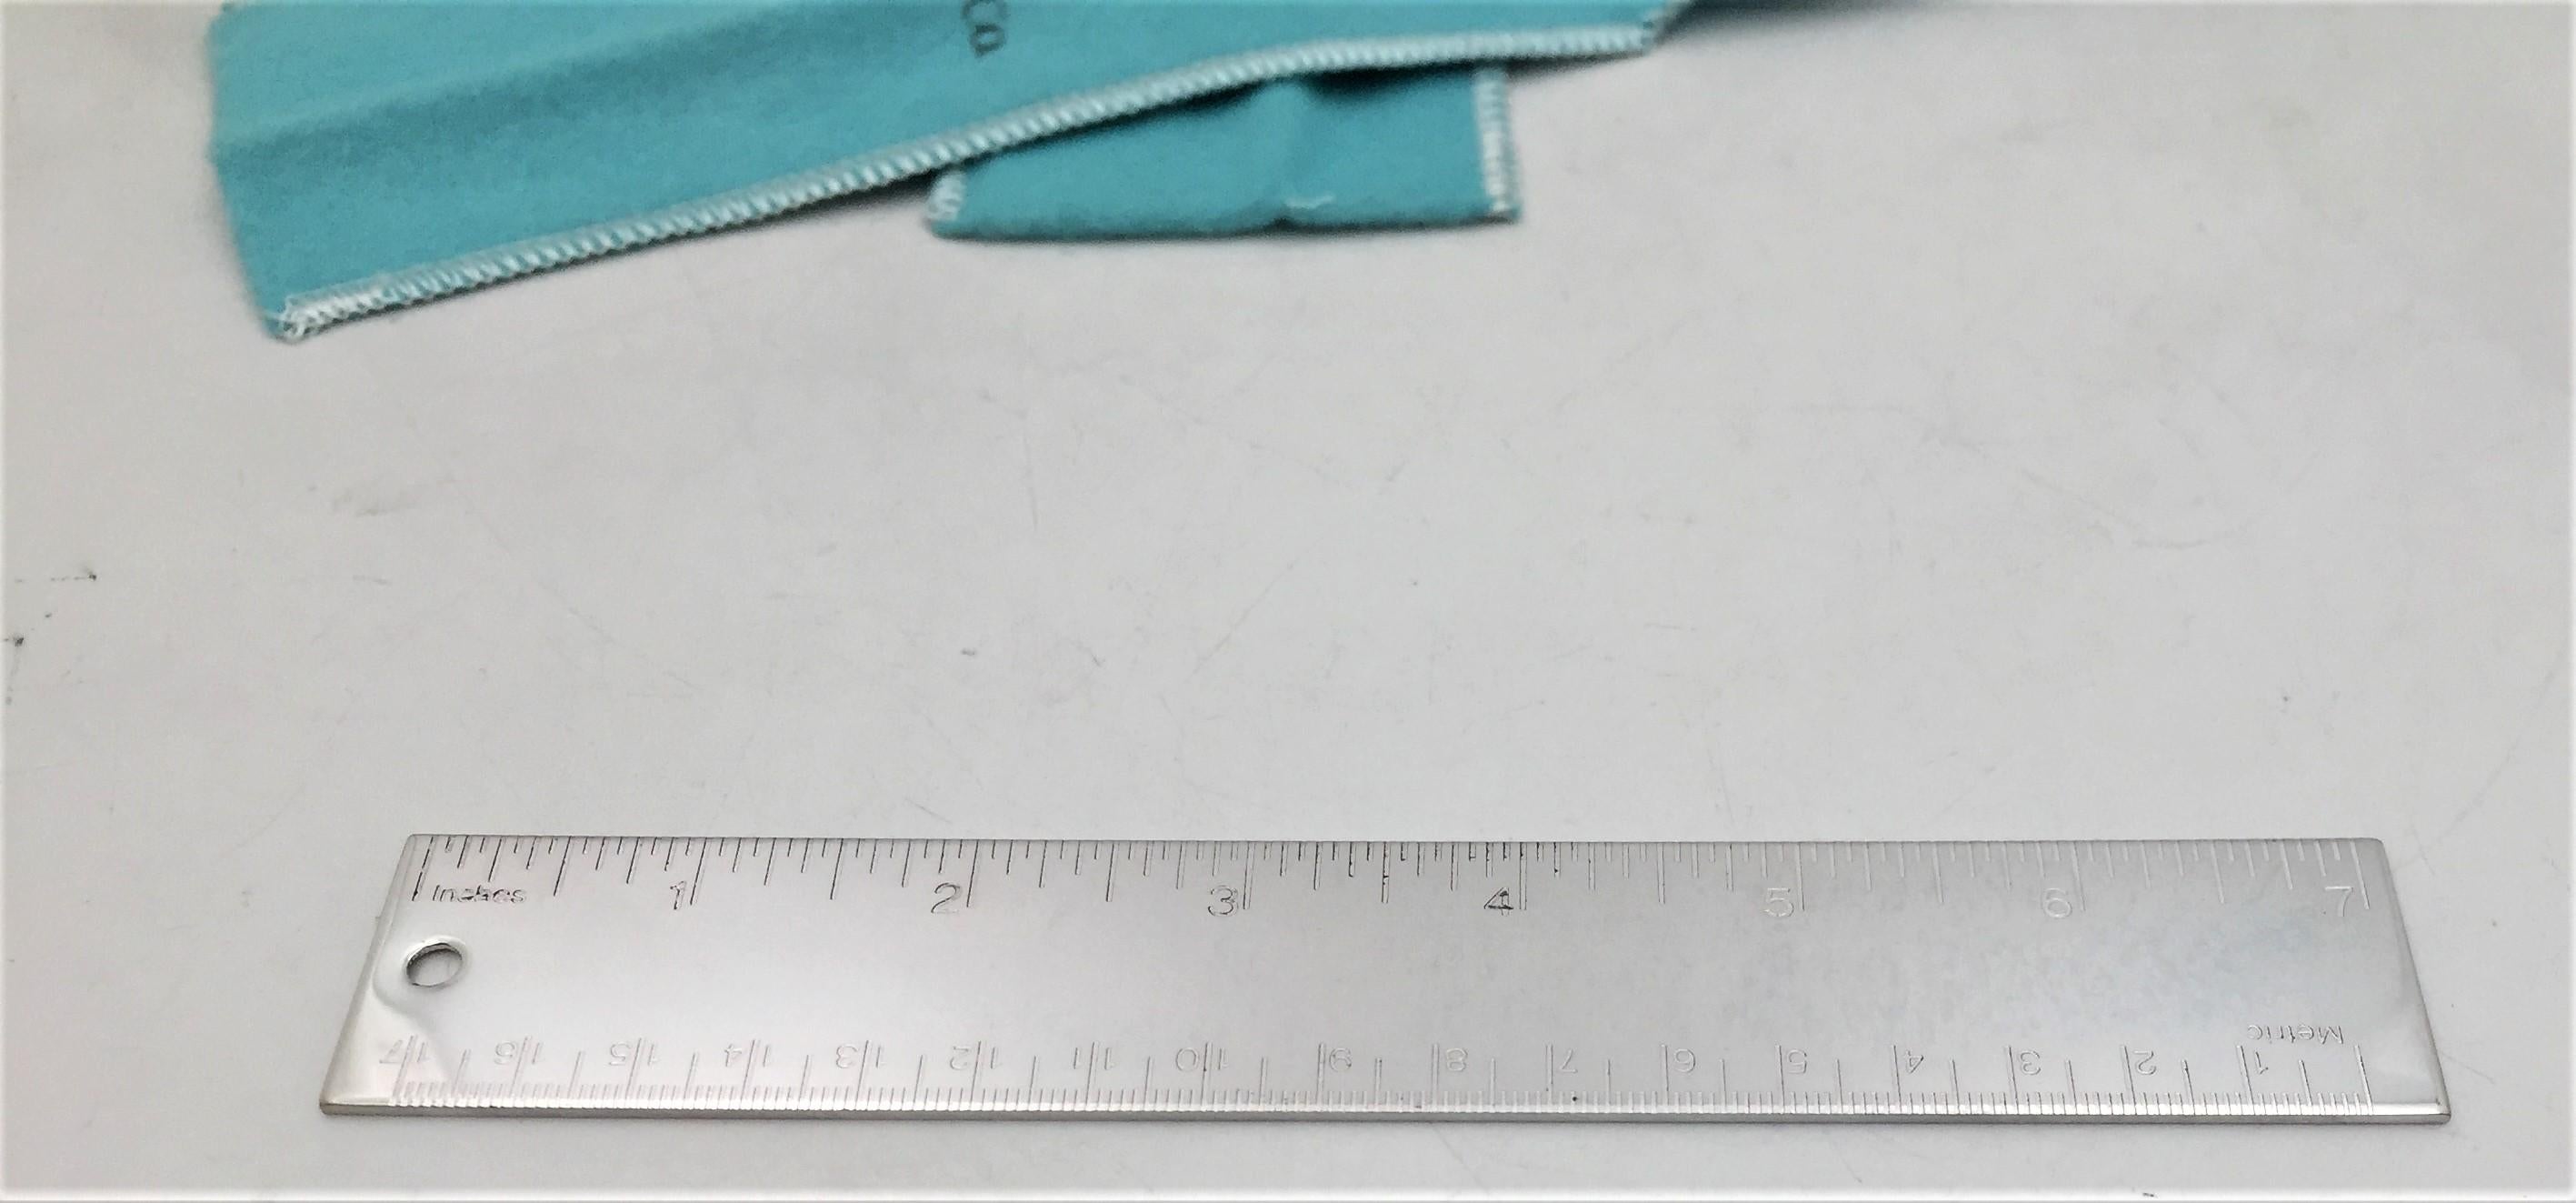 Satz von 4 metrischen Linealen aus Silberblech von Tiffany & Co. mit einer Länge von 7 Zoll (17 Zentimetern). Wird in einem authentischen, aquafarbenen Filzbeutel der Marke Tiffany & Co. geliefert. Brandneuer Zustand. Tolles Unisex-Geschenk für